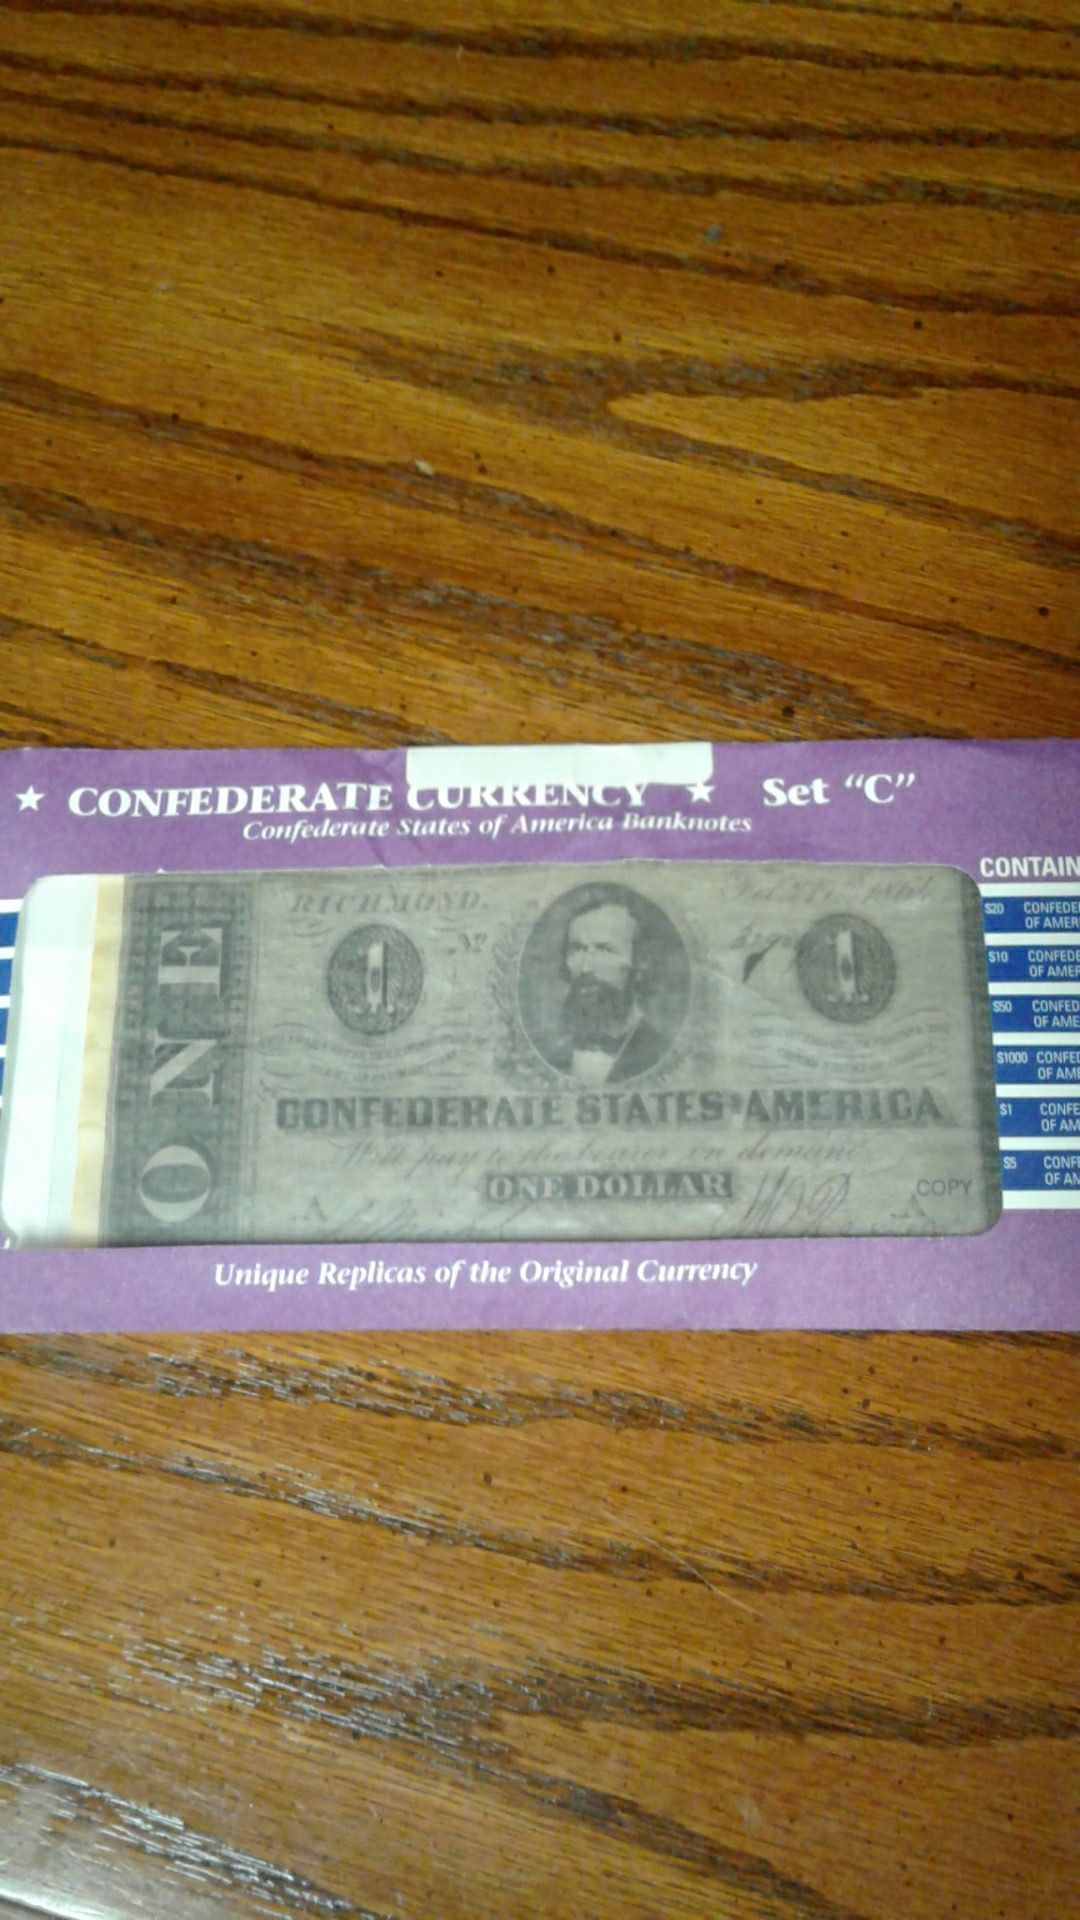 Replica civil war confederate currency